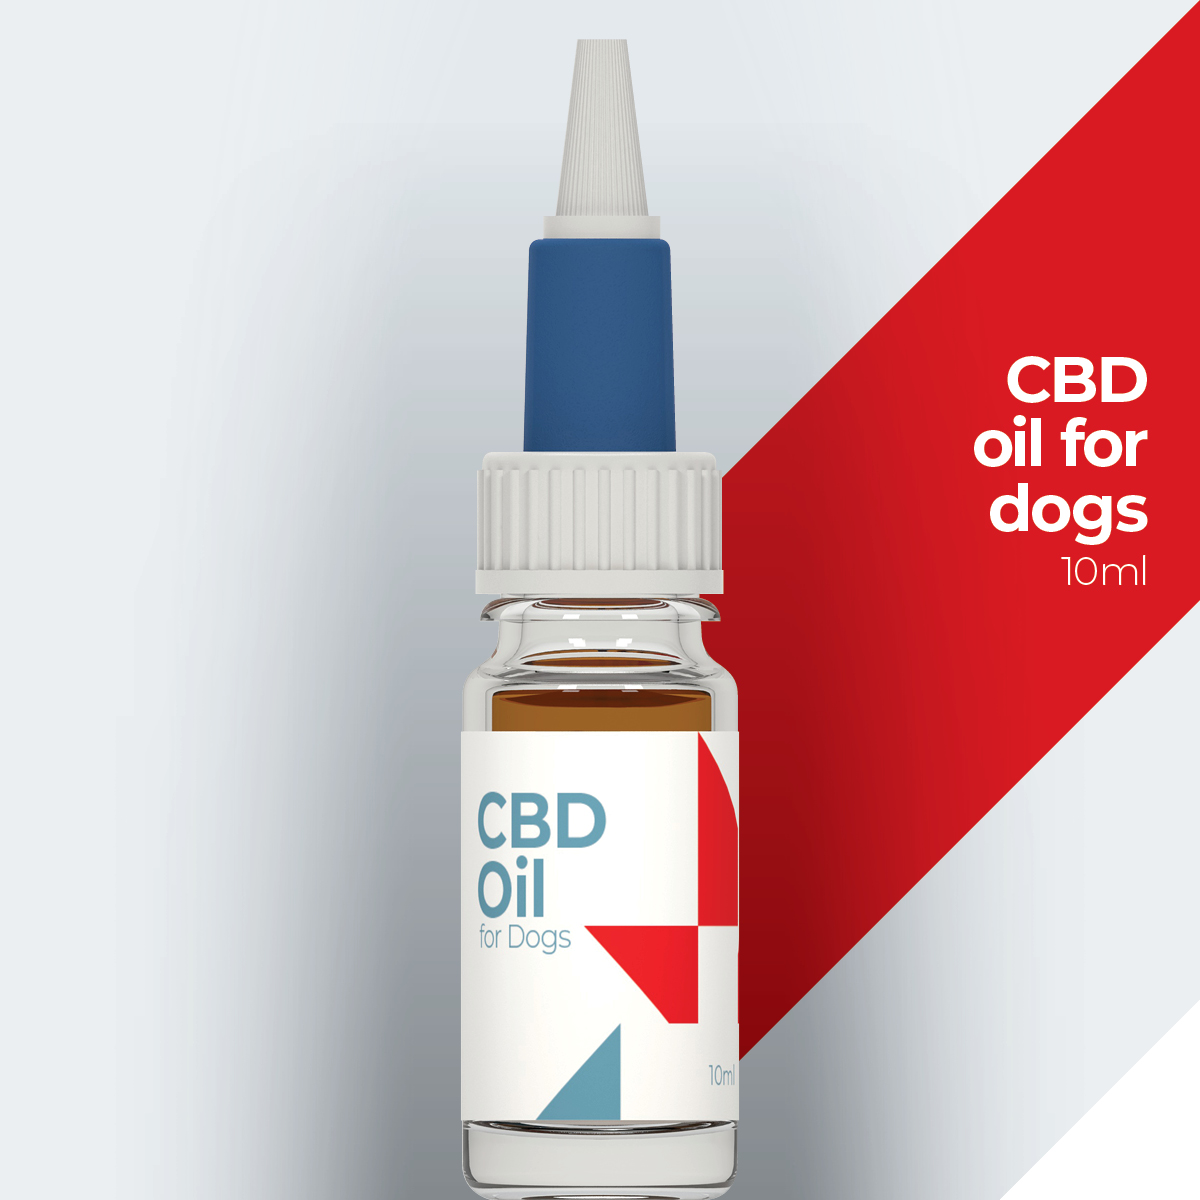 Labocan white label and private label cbd oil for dogs (10ml)